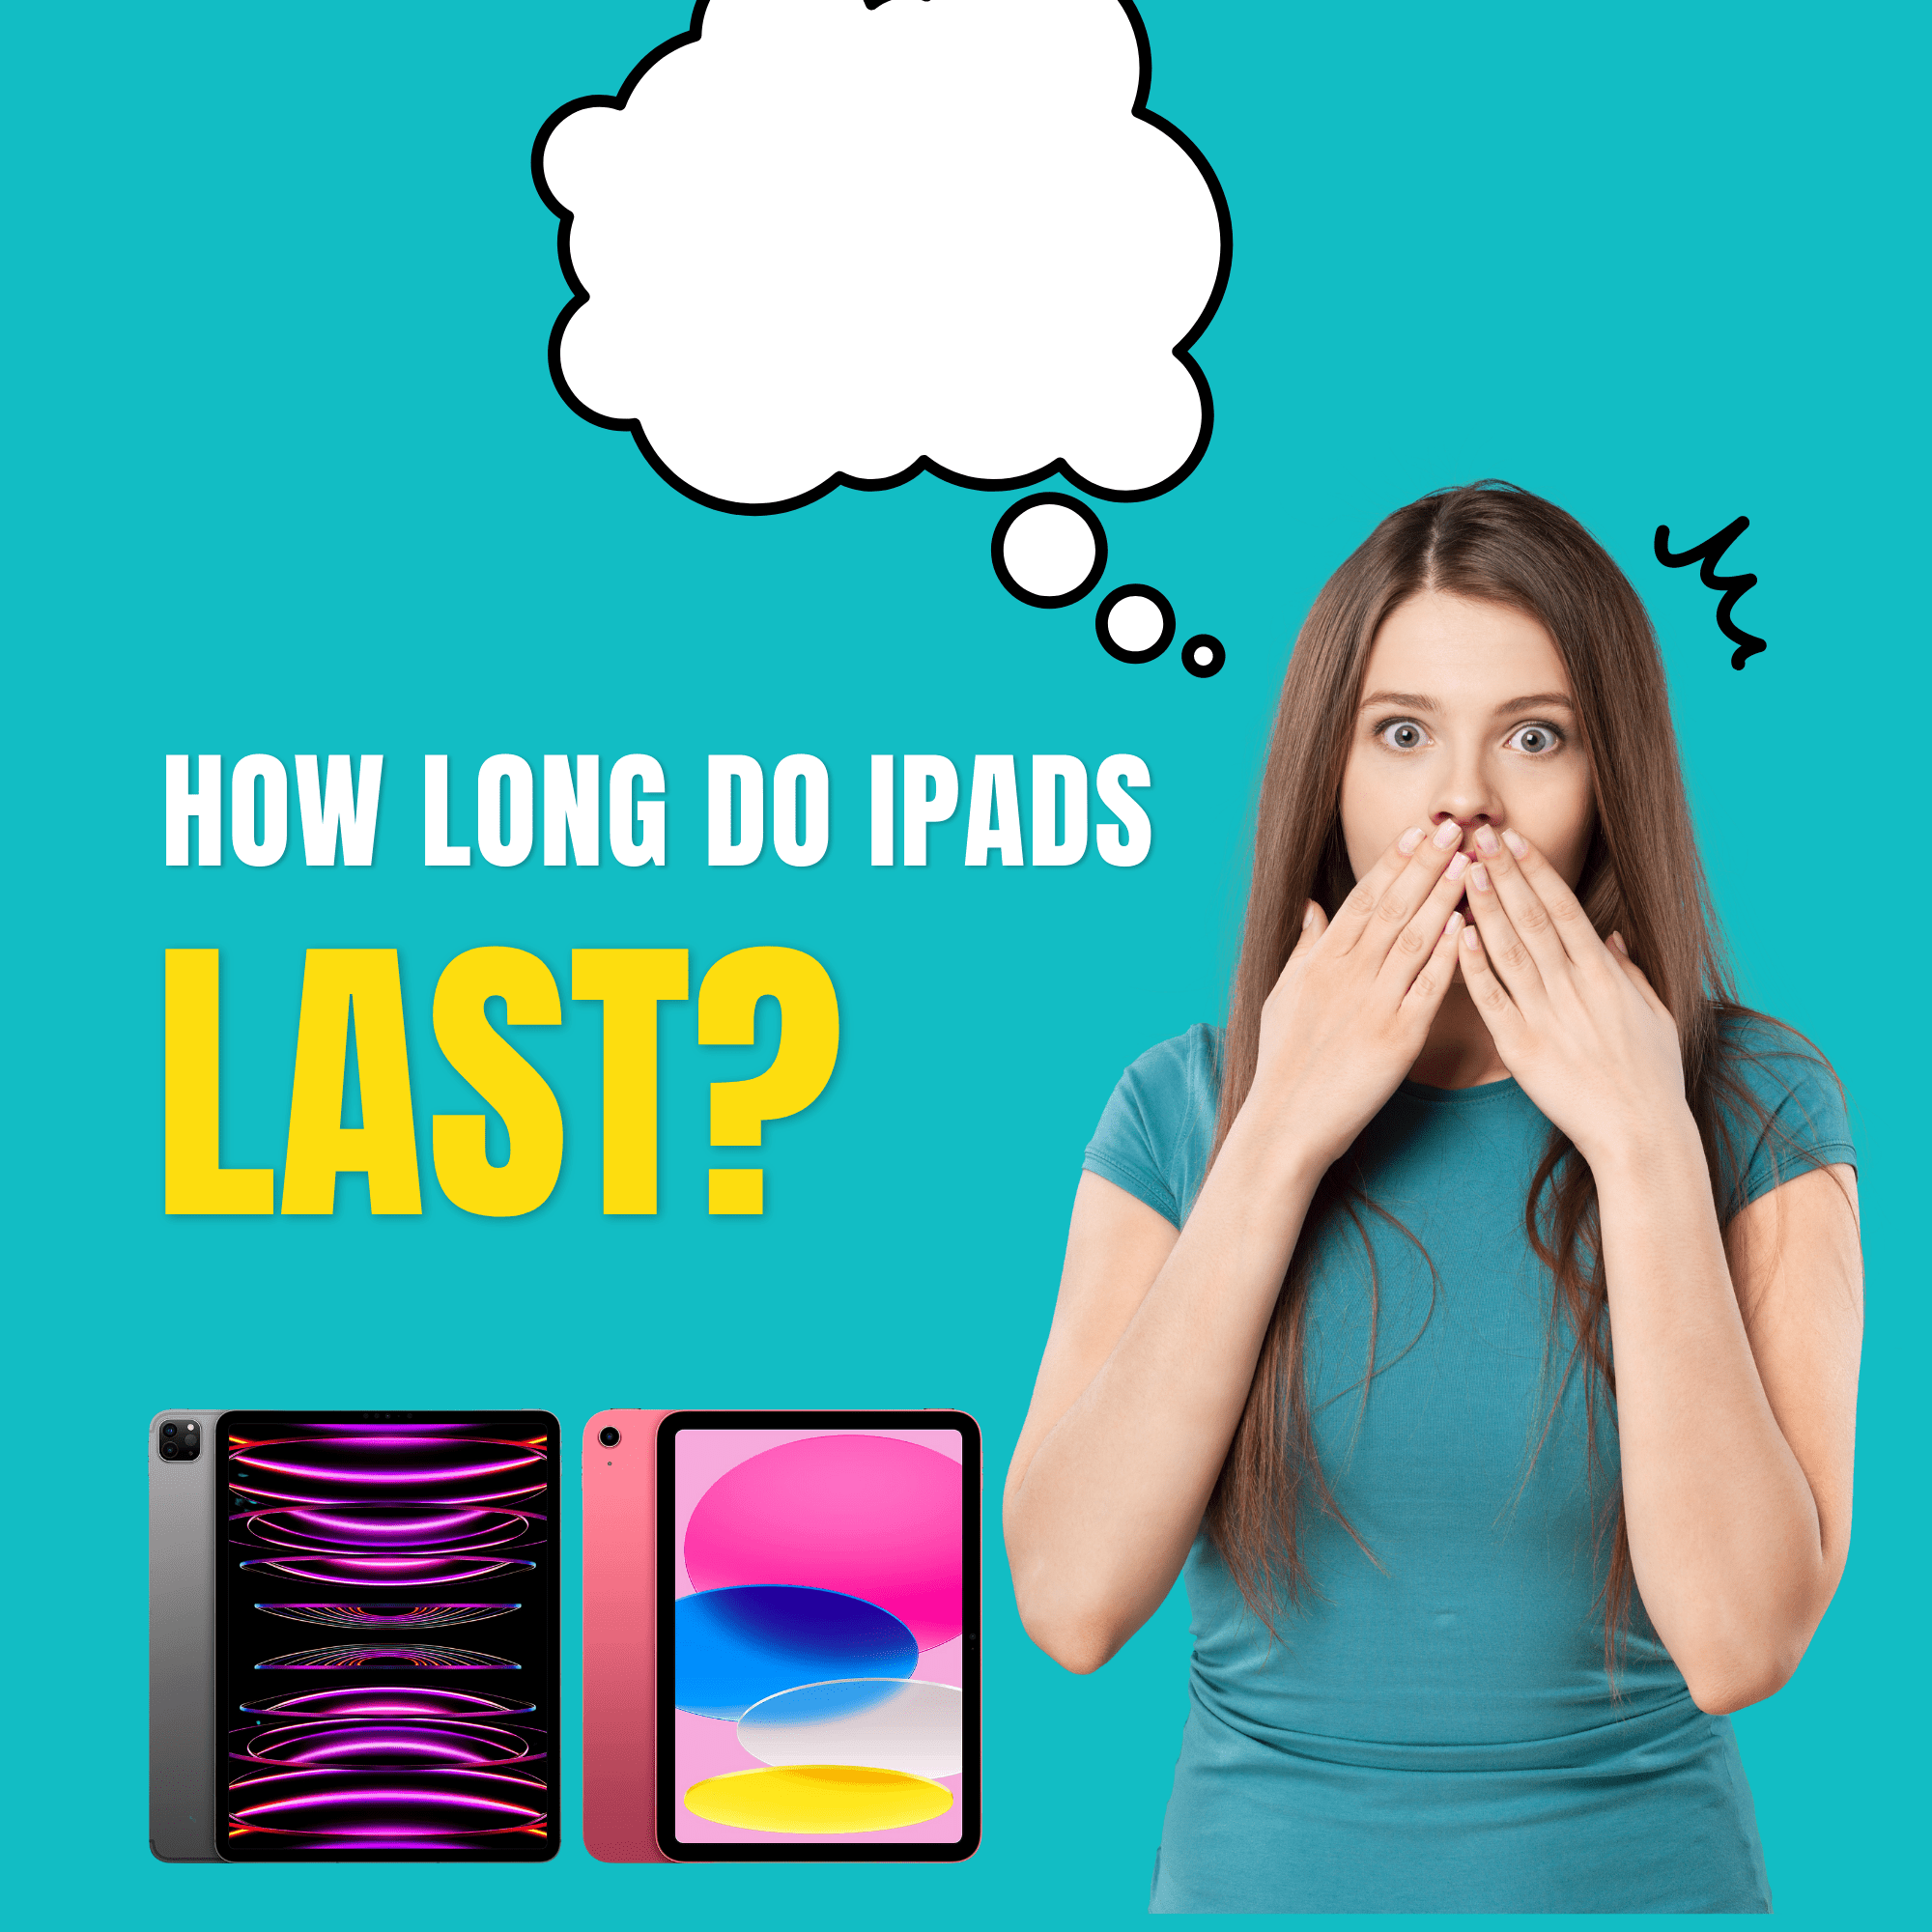 how long do ipads last?